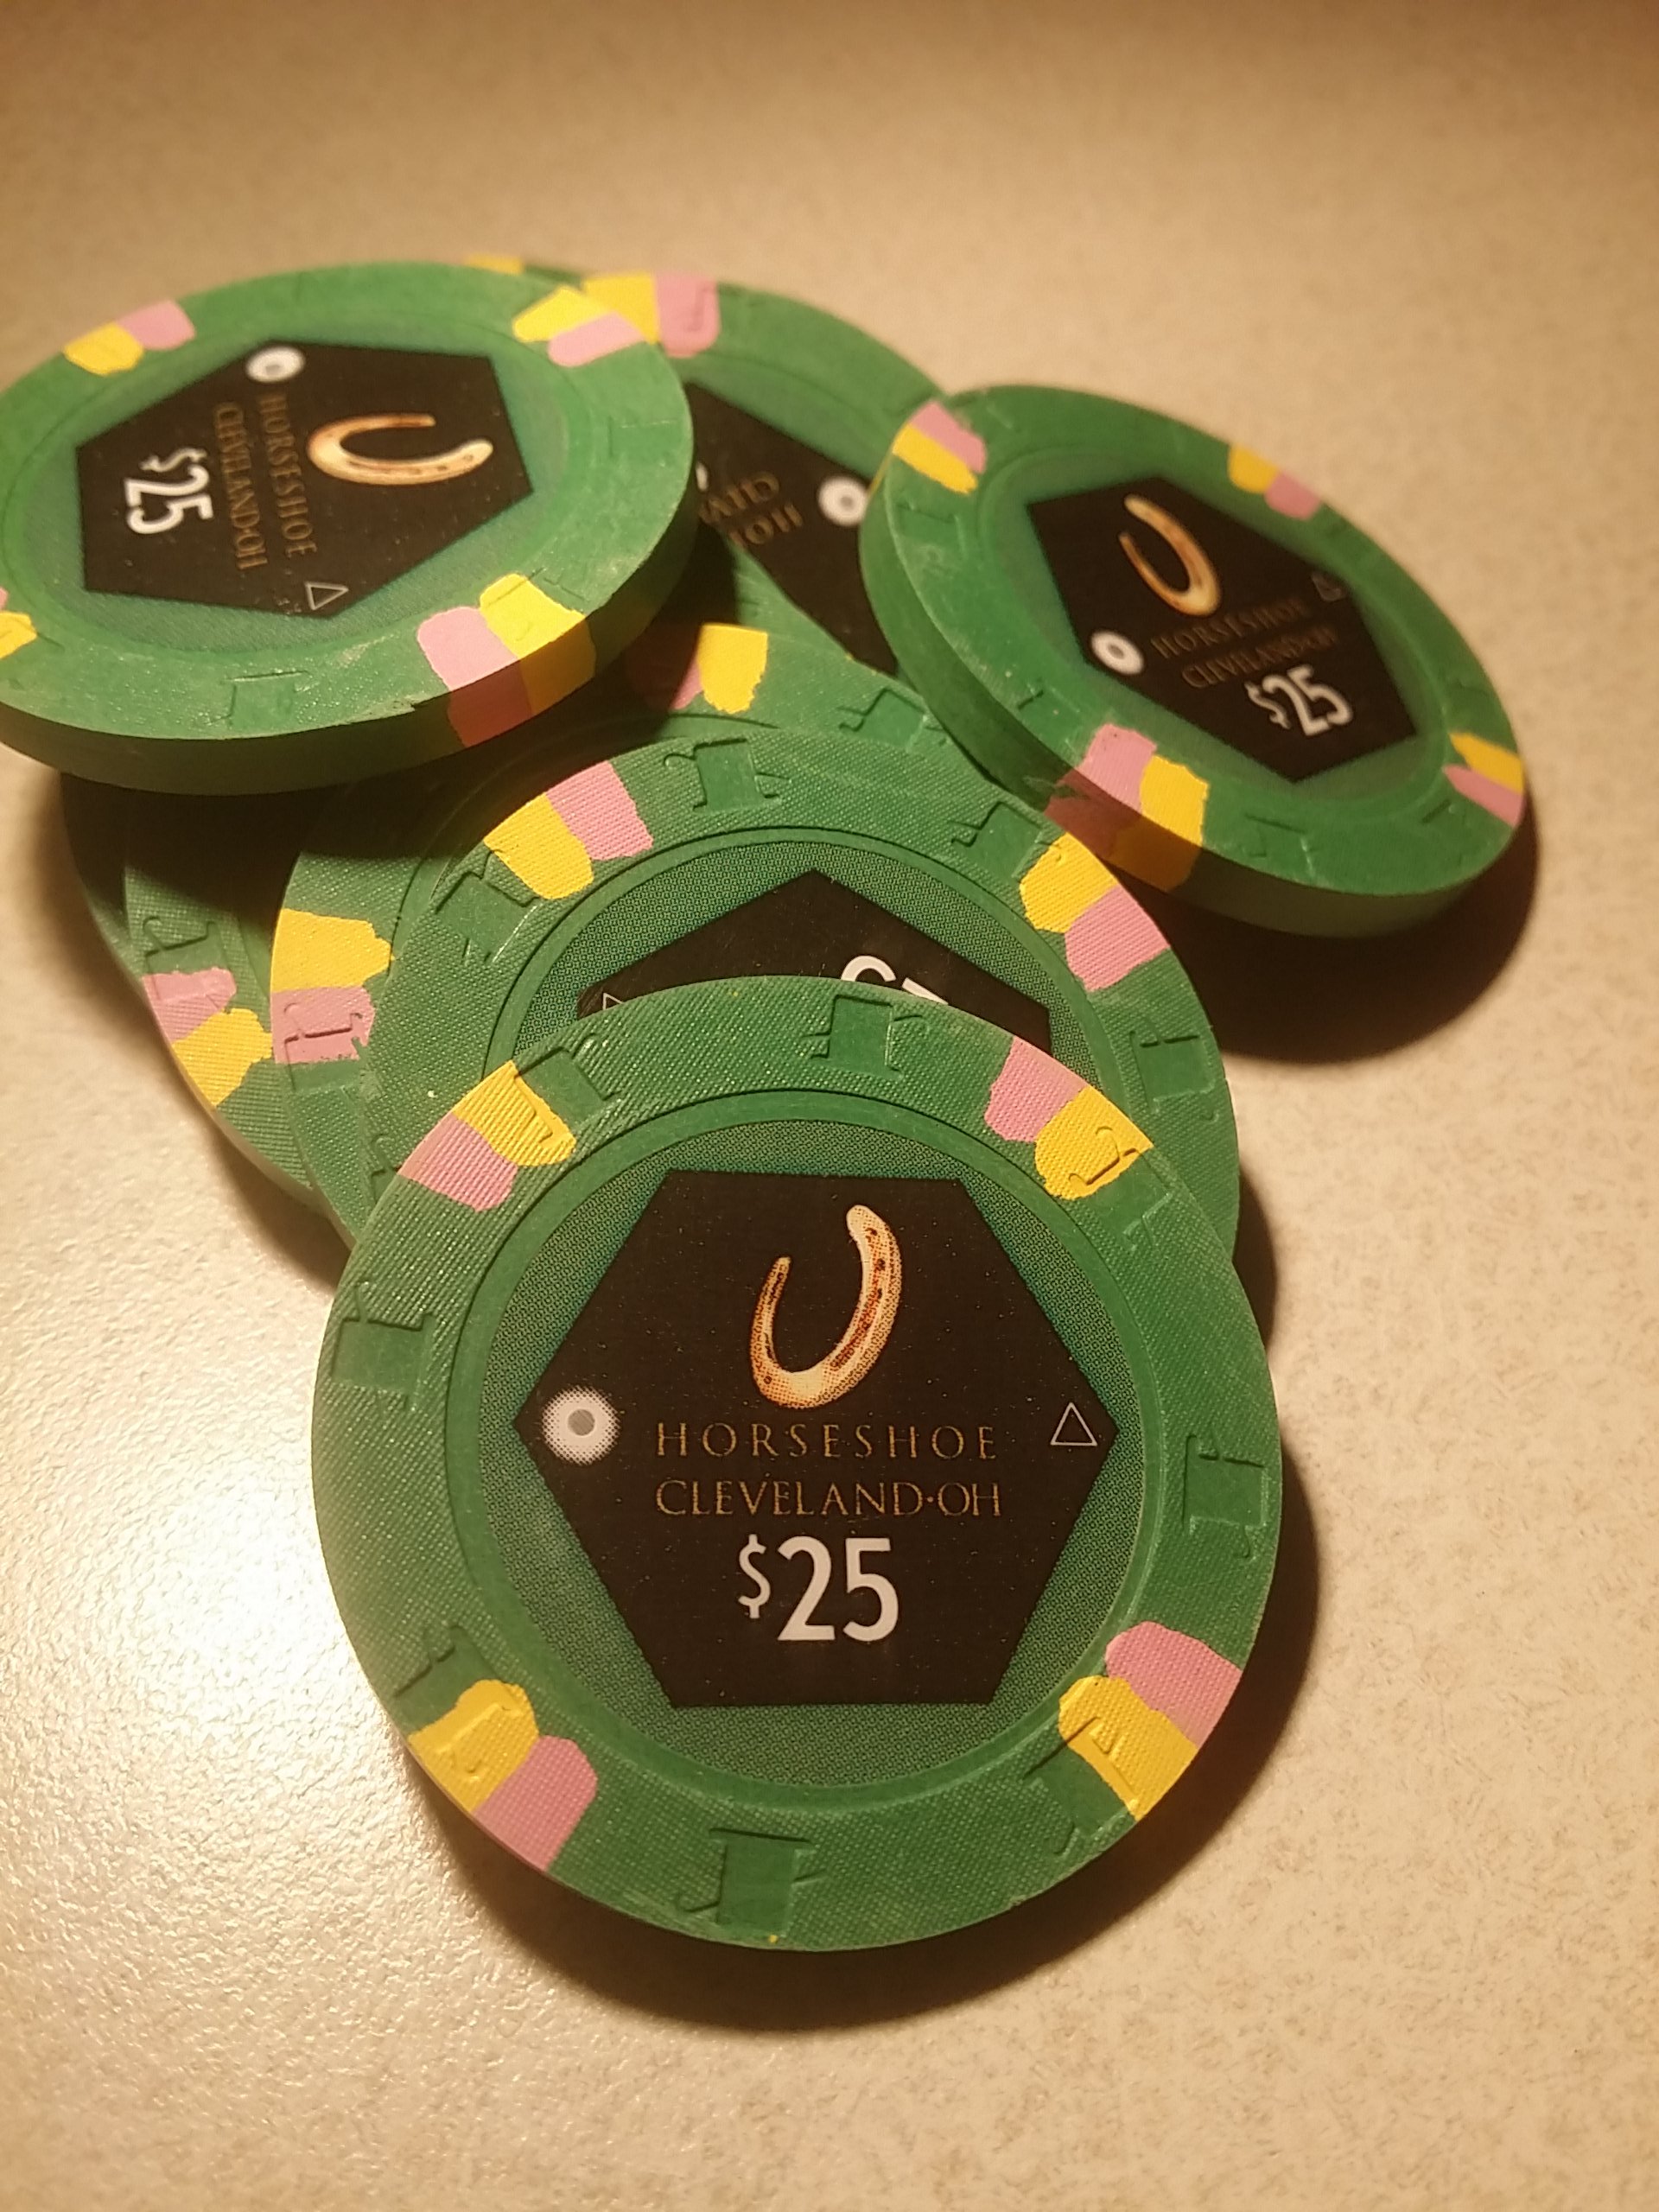 Horseshoe Casino Cleveland Chips - $25s